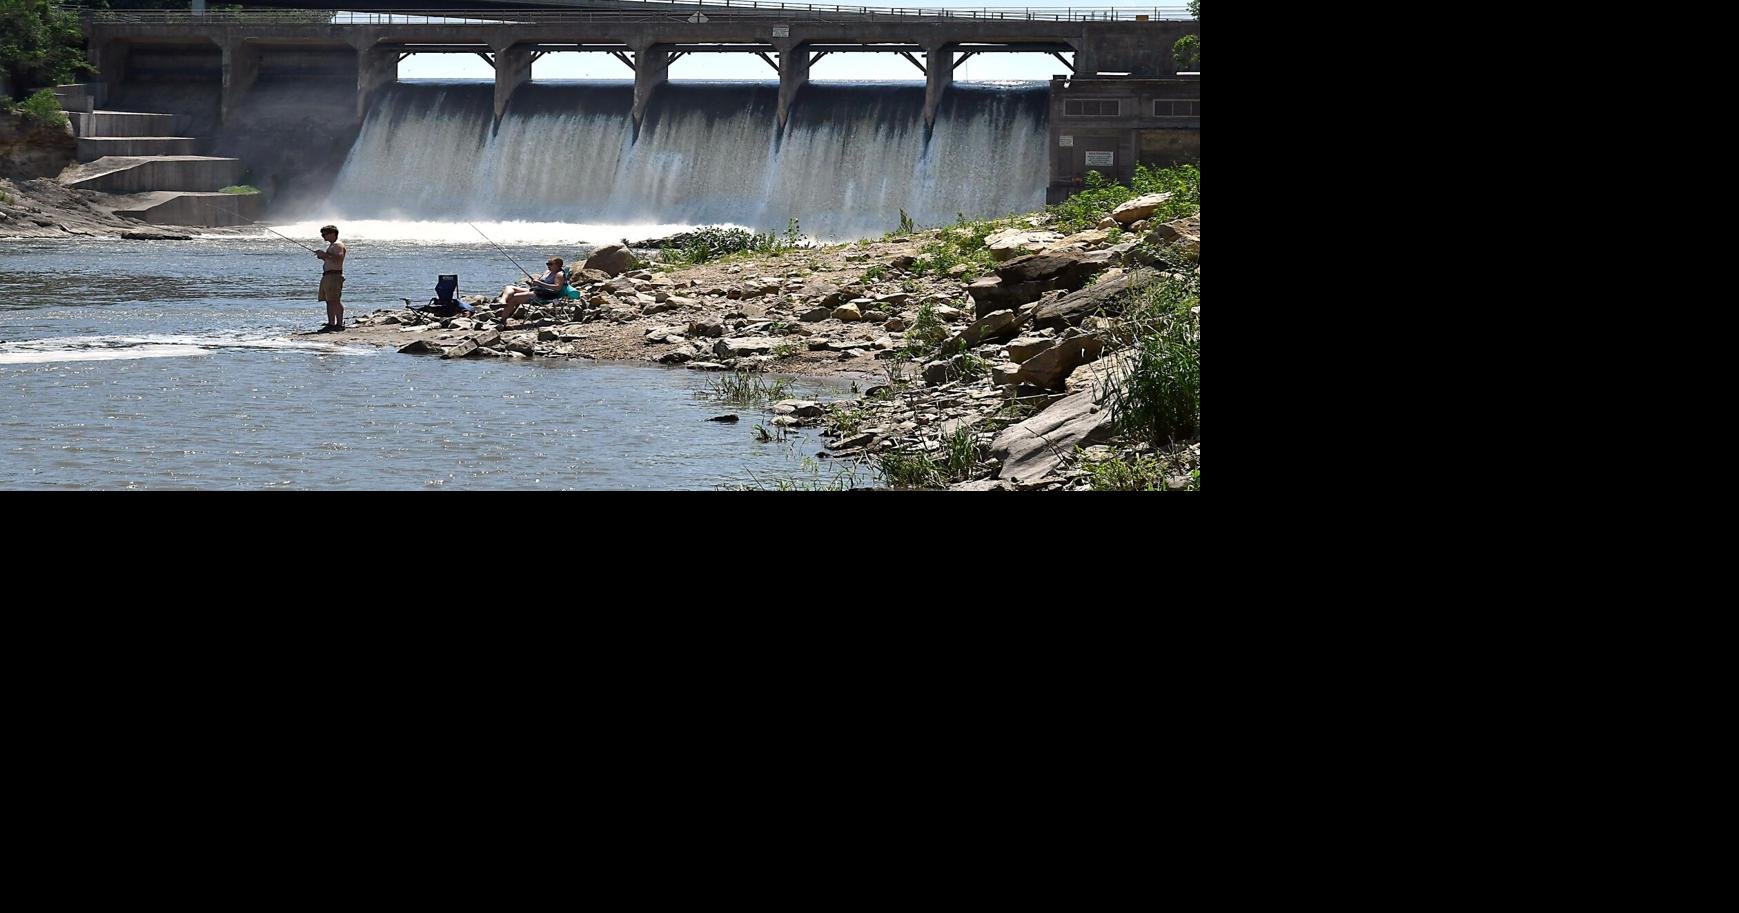 DAM DILEMMA Future of Rapidan Dam hangs in air as county analyzes